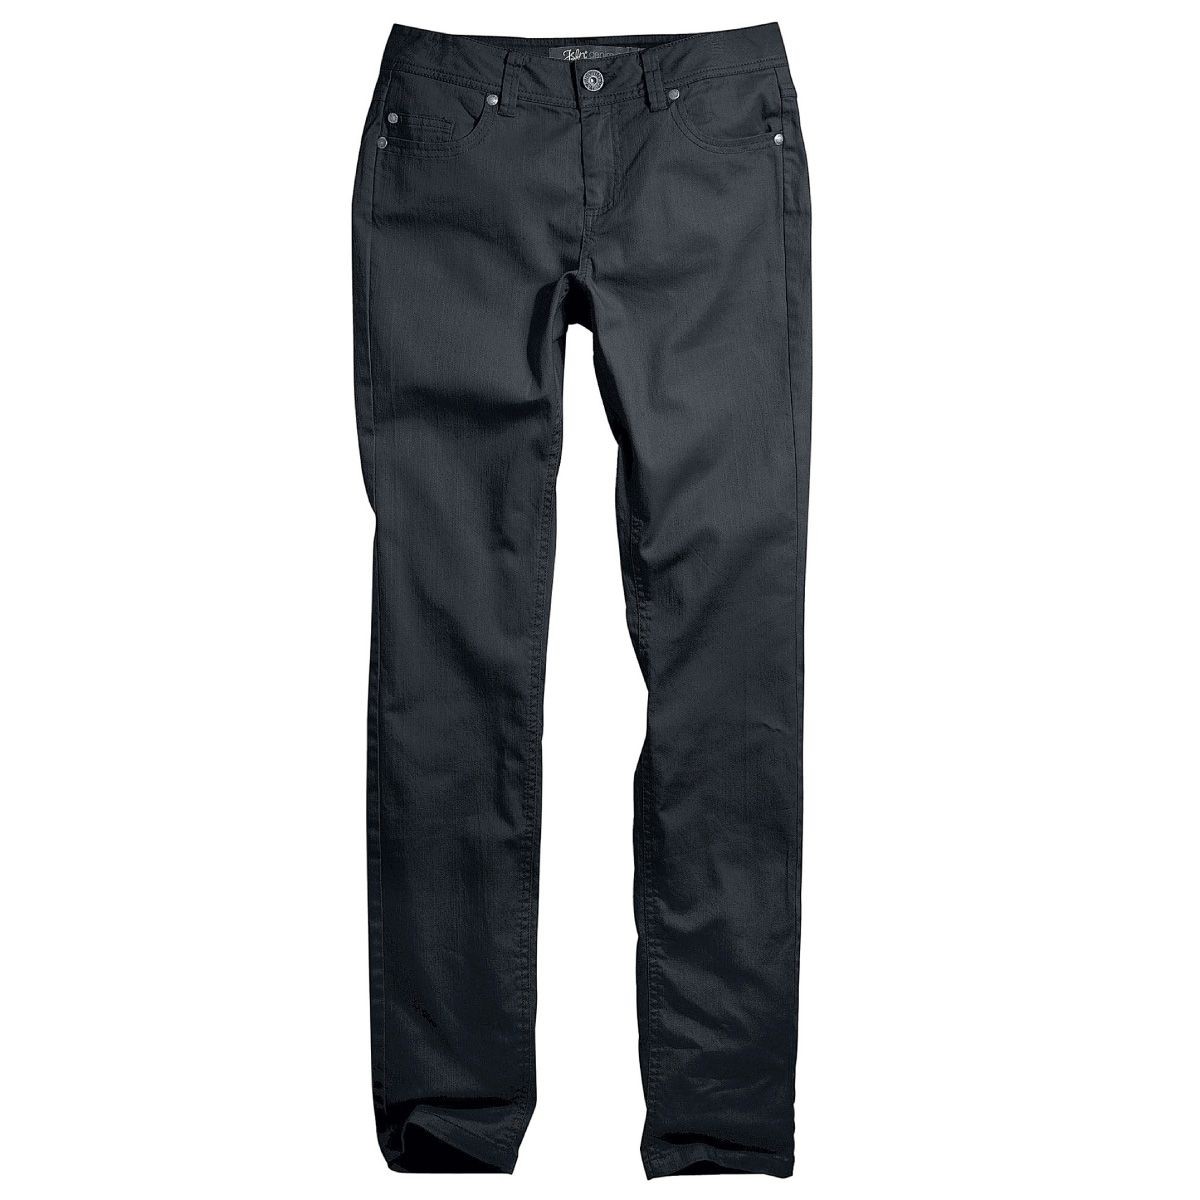 Stretch jeans slim 82cm long, 6 colors